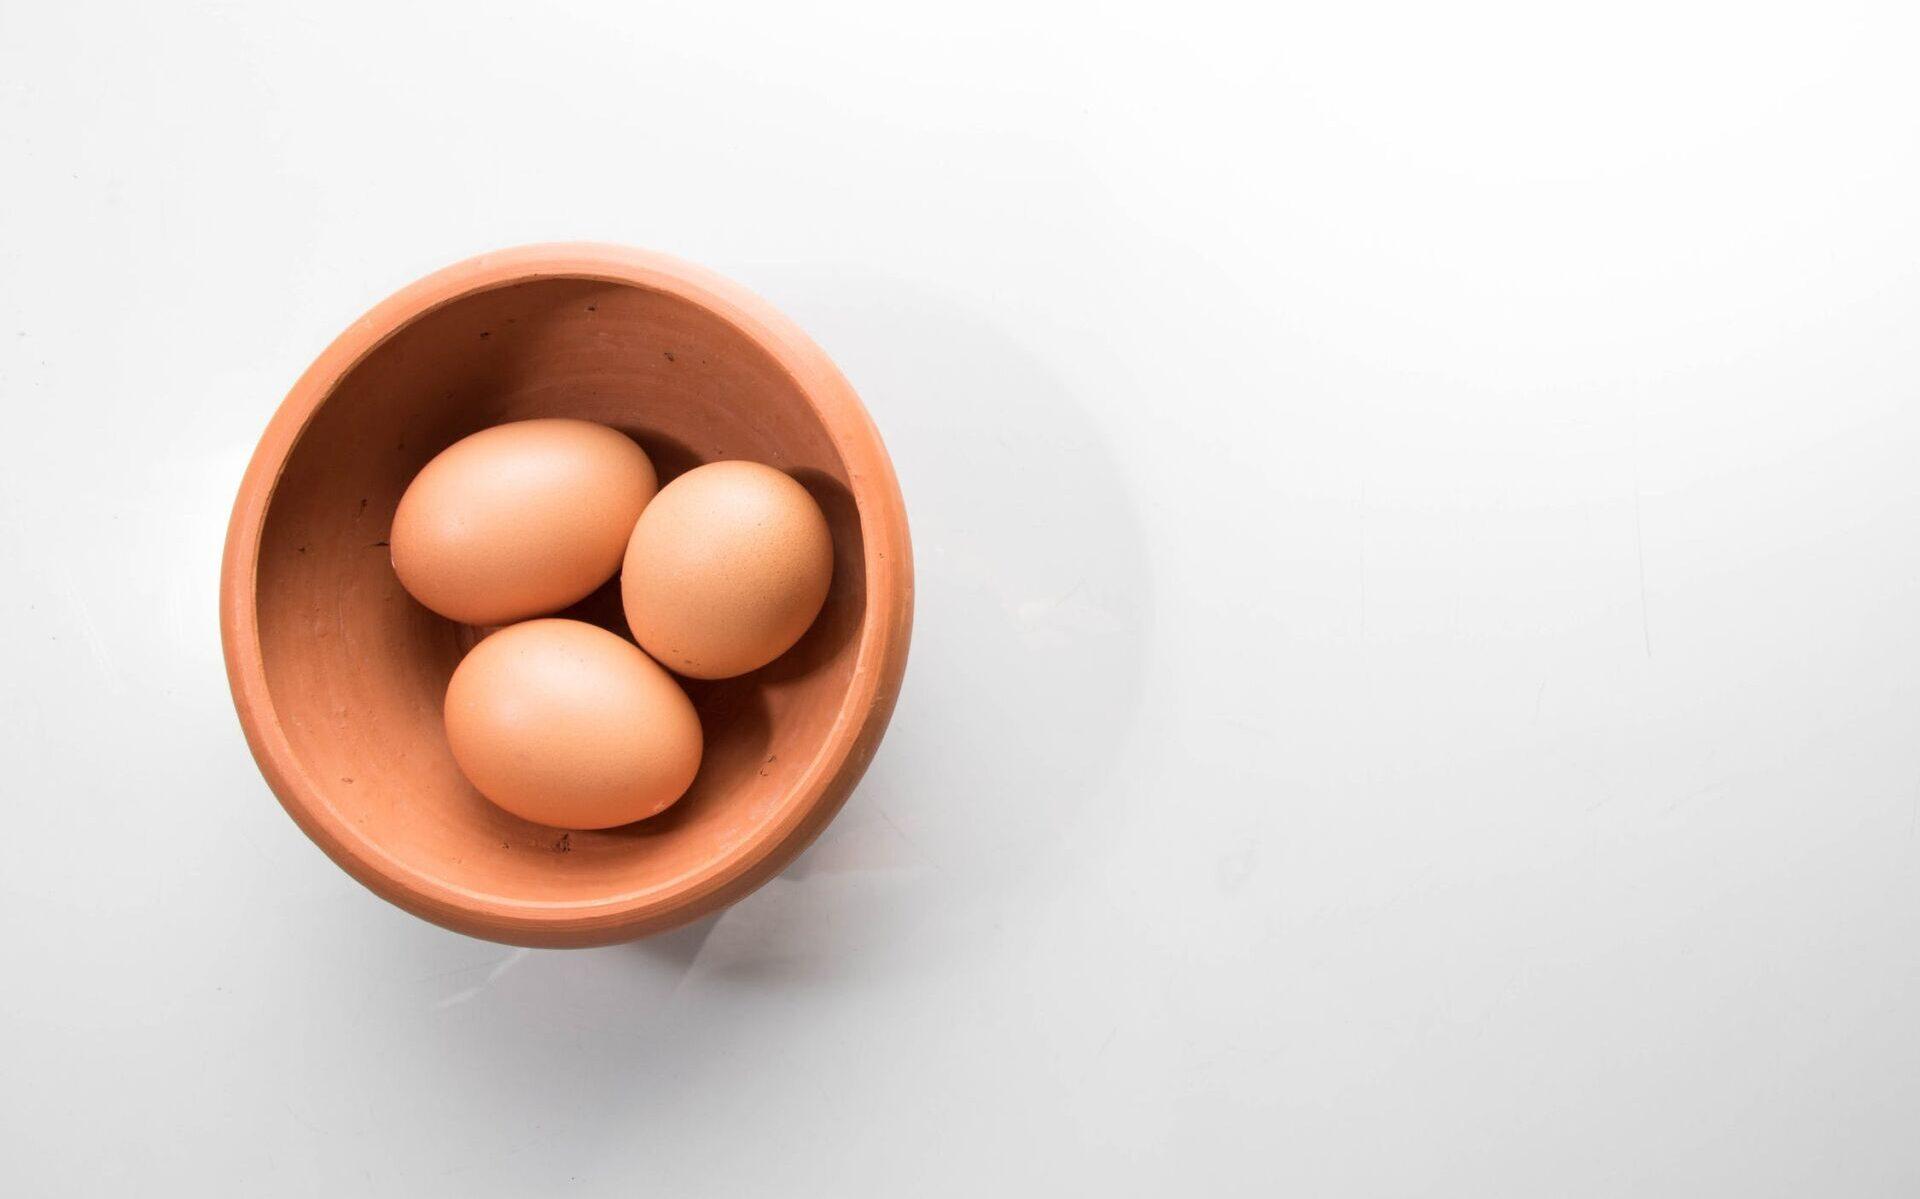 Jajko kurze - jakie ma zastosowanie w domowej pielęgnacji? /fot. pexels